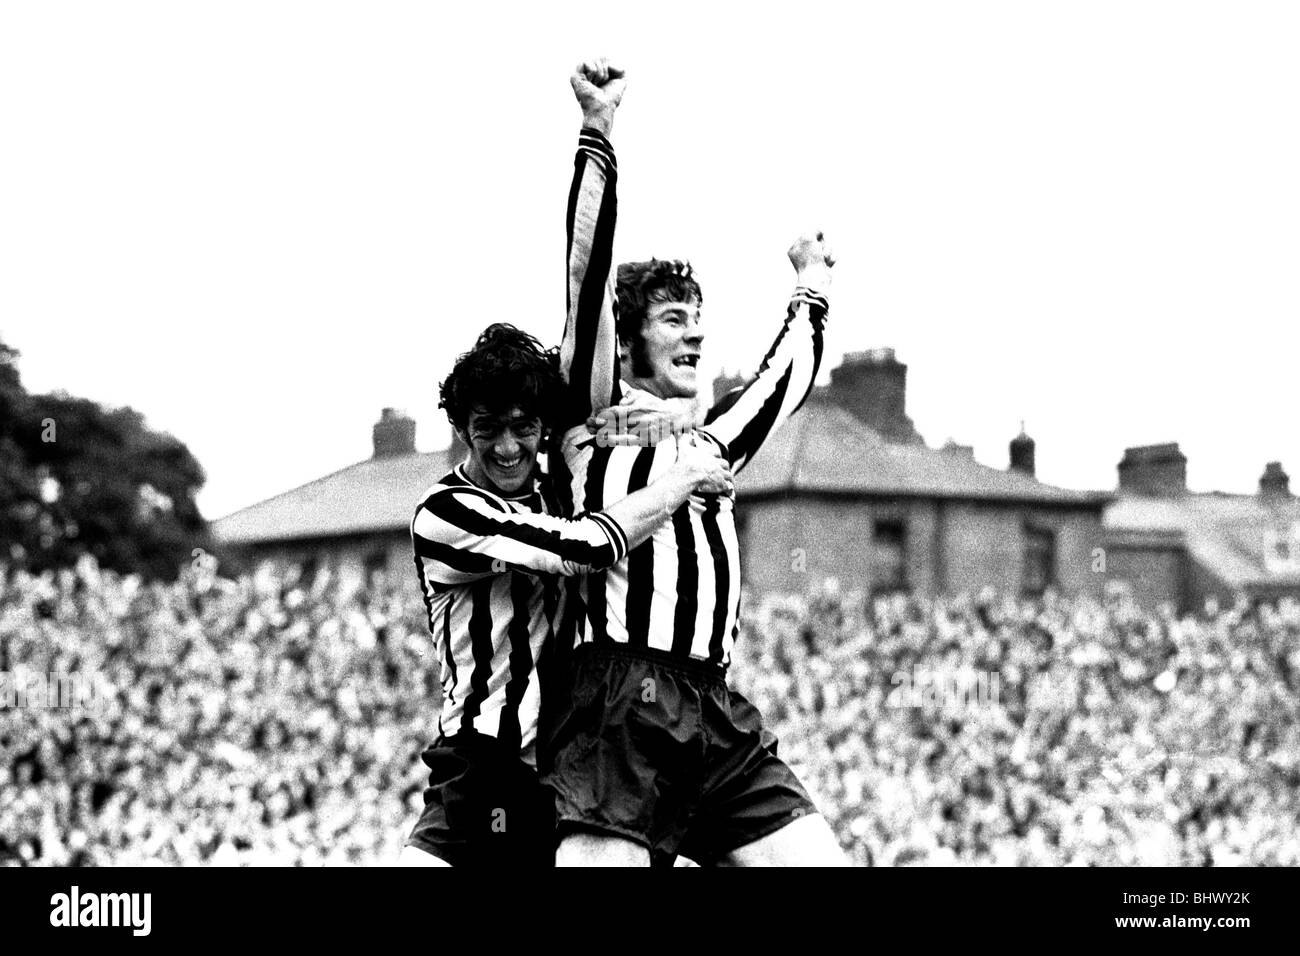 Liverpool v Newcastle United à St James's Park, 21/08/1971. Malcolm MacDonald célèbre après avoir marqué un but avec Terry Hibbert Supermac était arrivée. Il salue la foule, étreint par Terry Hibbitt. Banque D'Images